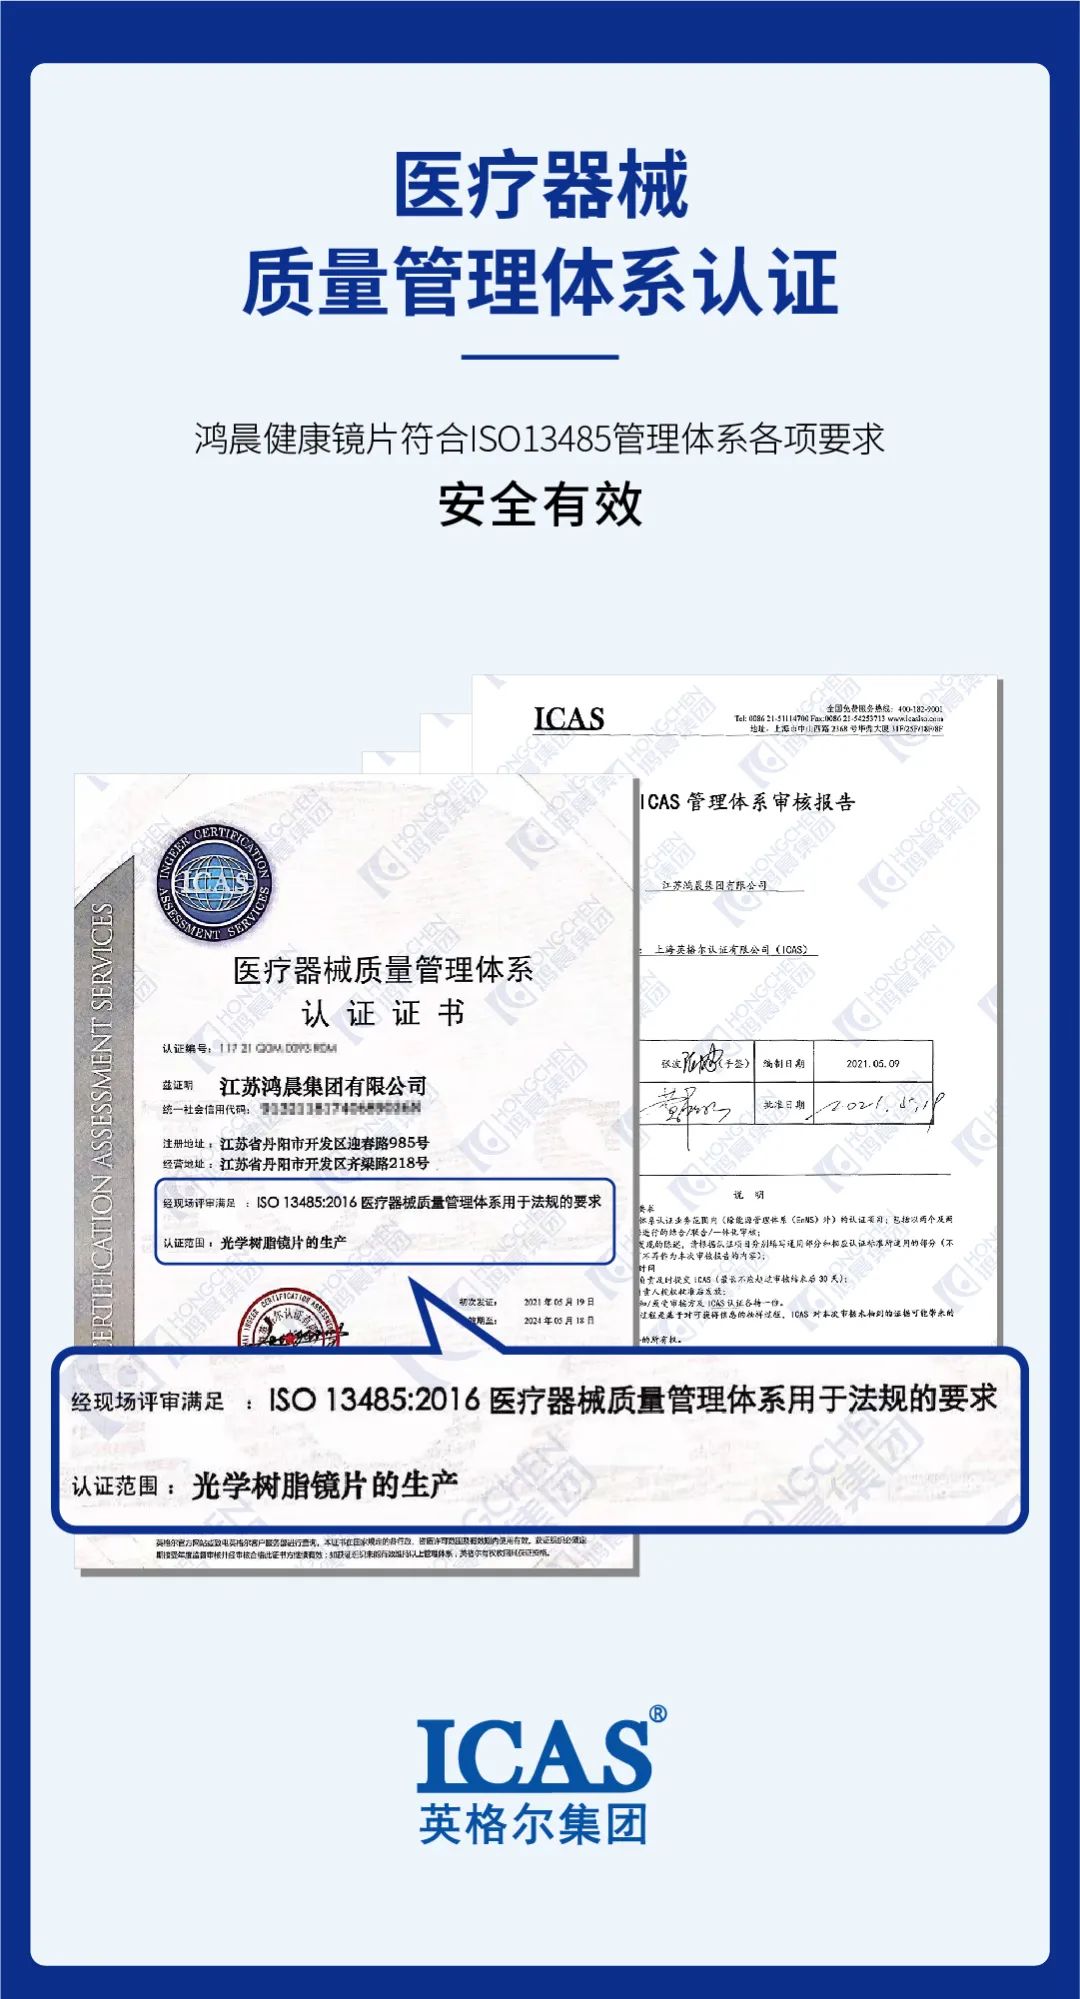 Hongchen lensi tıbbi güvenlik sistemi sertifikasını kazandı